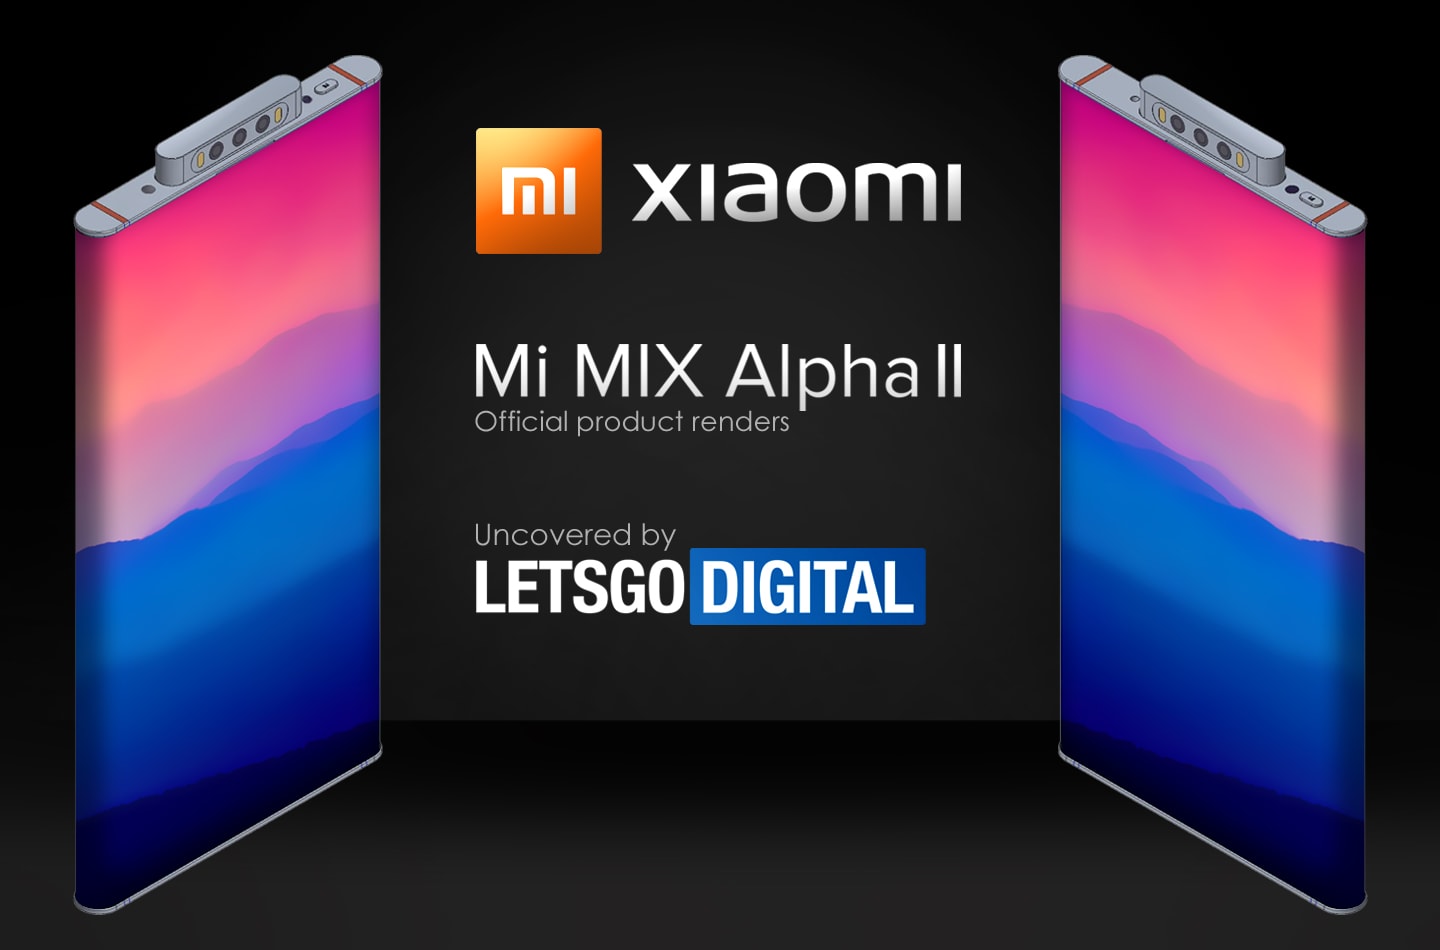 Ecco il successore dello Xiaomi Mi Mix Alpha con schermo avvolgente e fotocamera pop-up (foto)